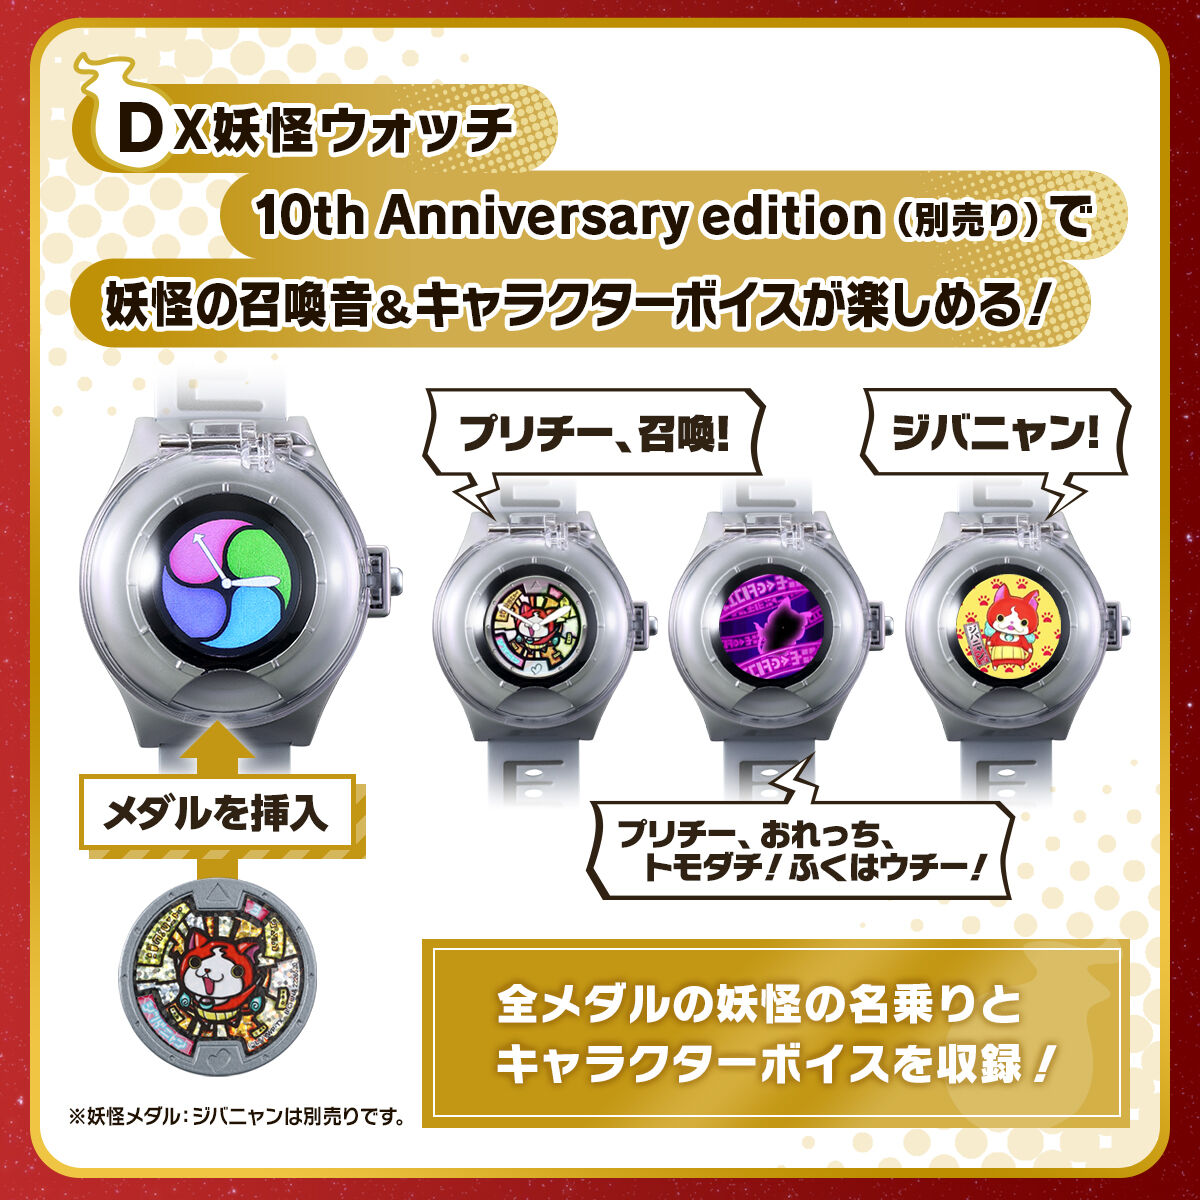 DX妖怪ウォッチ 10th Anniversary edition（別売り）で妖怪の召喚音＆キャラクターボイスが楽しめる！